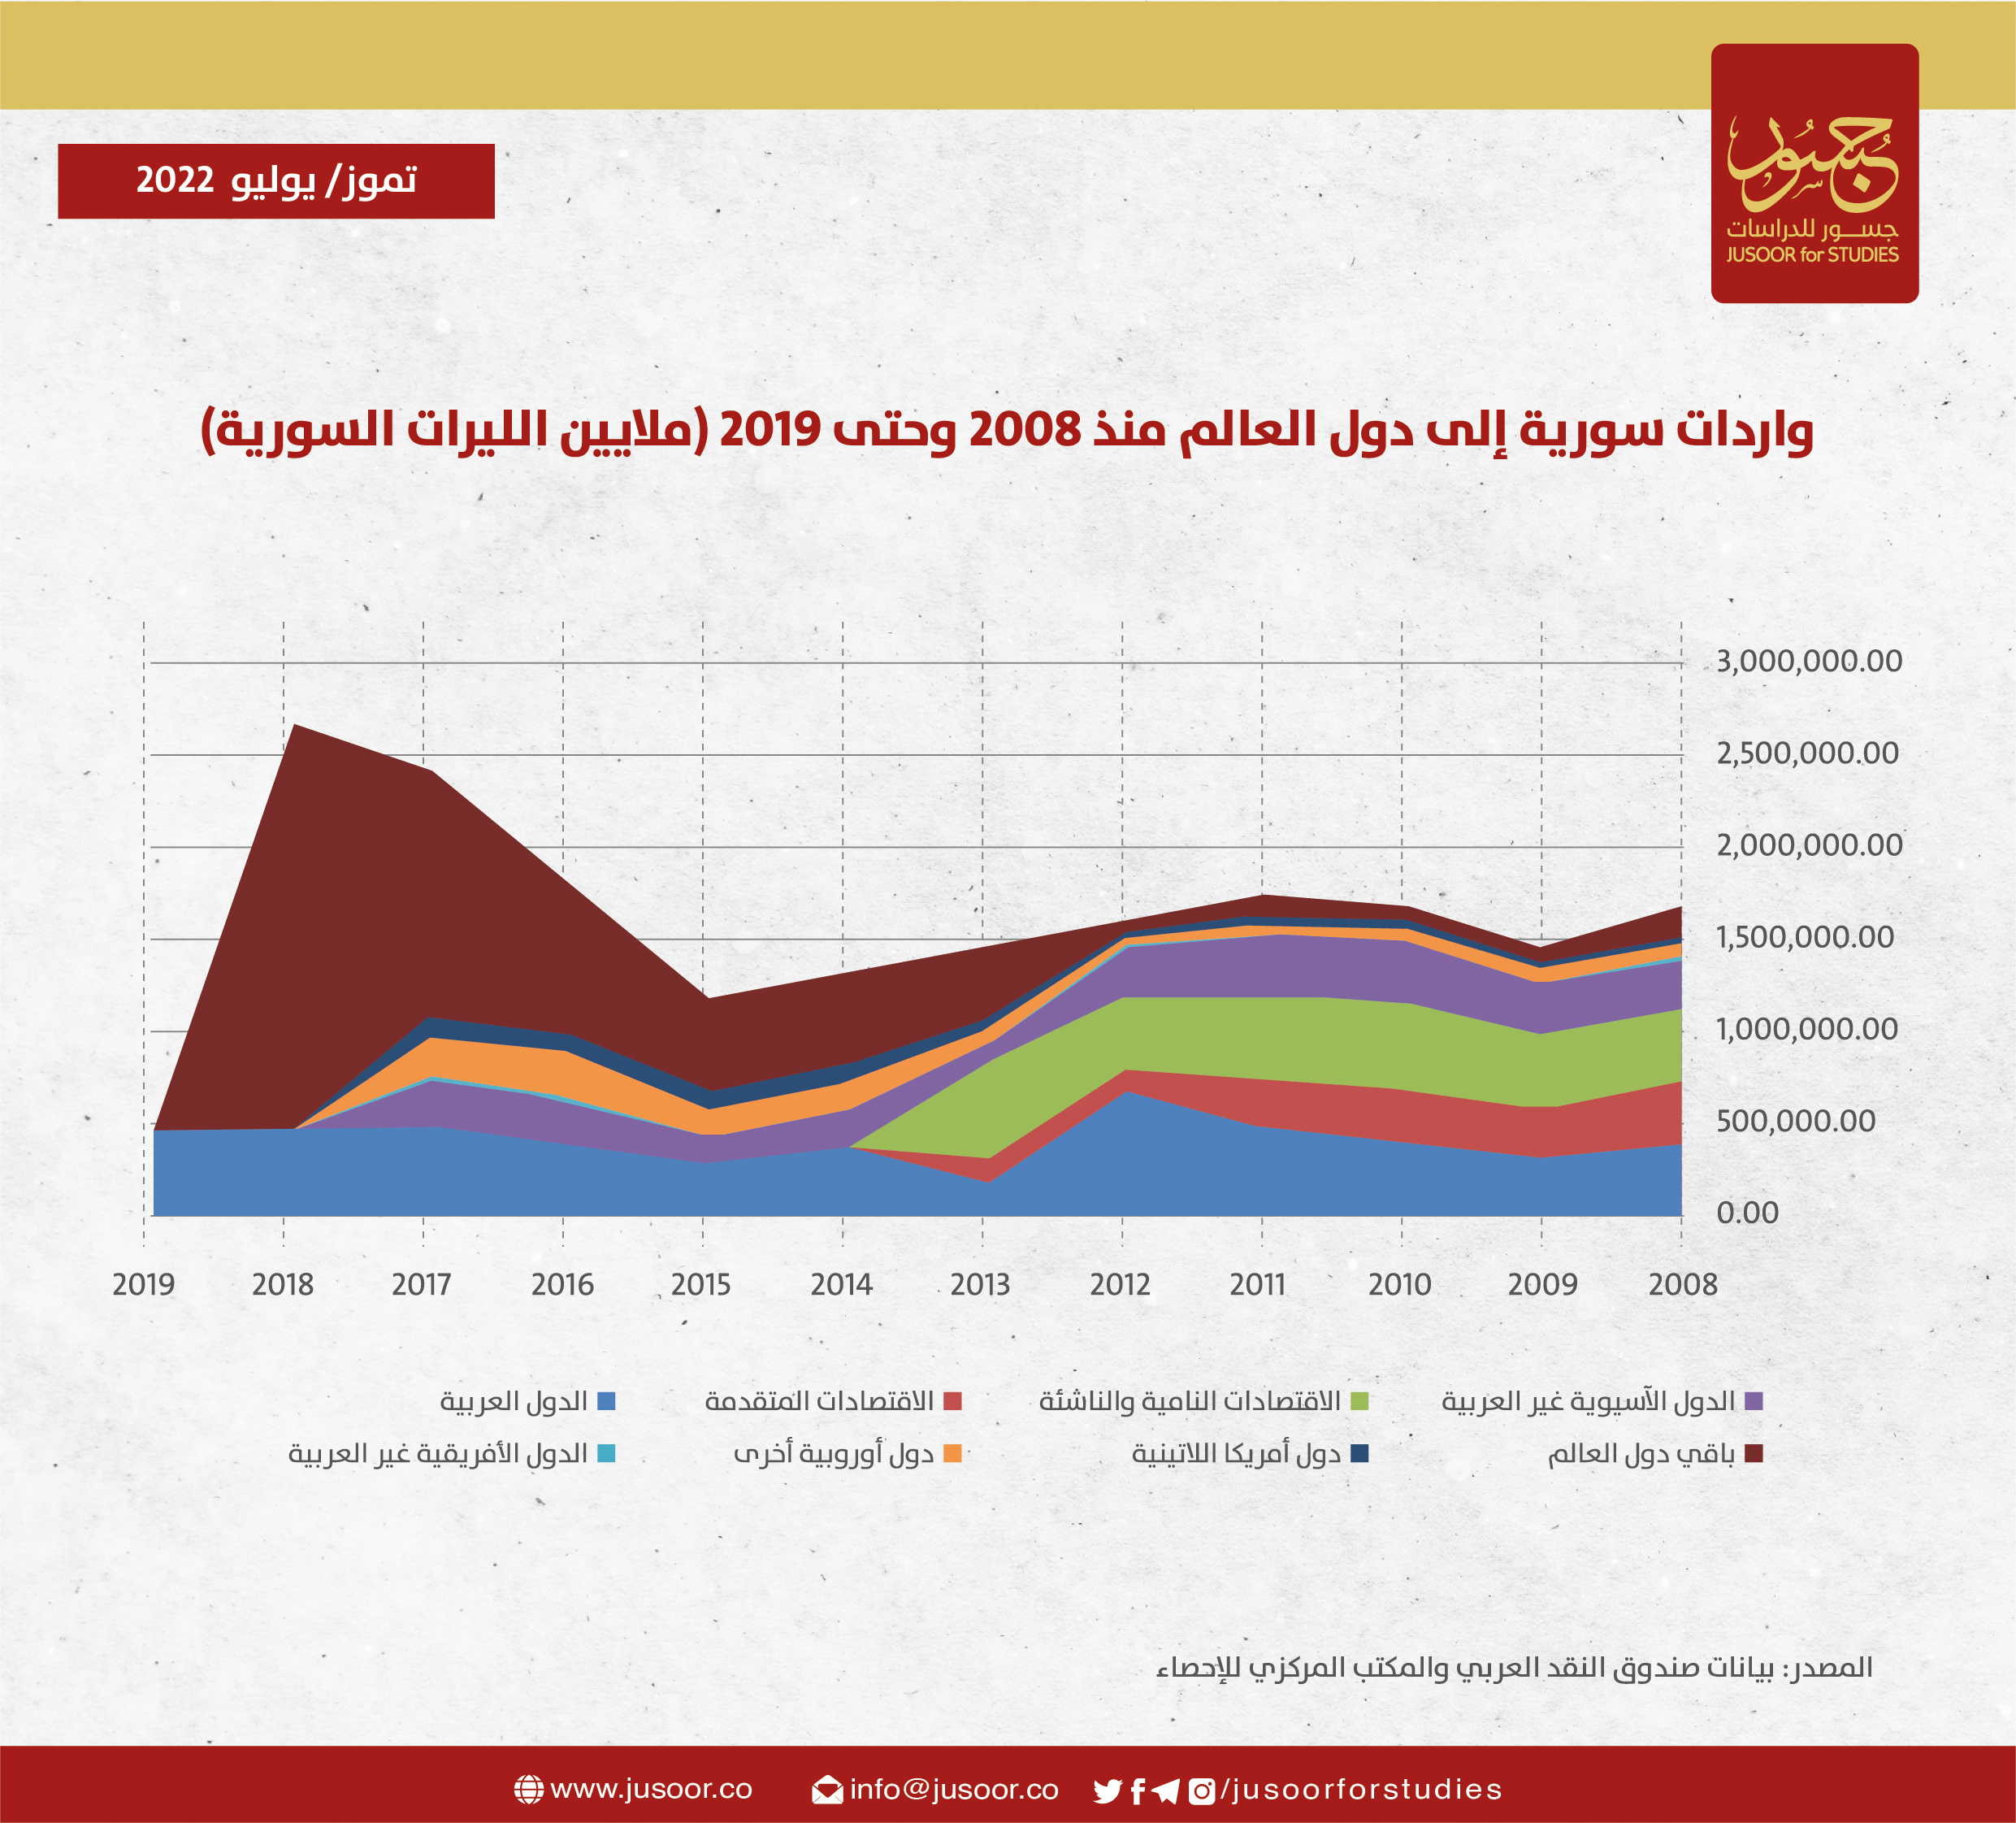 واردات سورية إلى دول العالم منذ 2008 وحتى 2019 (ملايثين الليرات السورية)